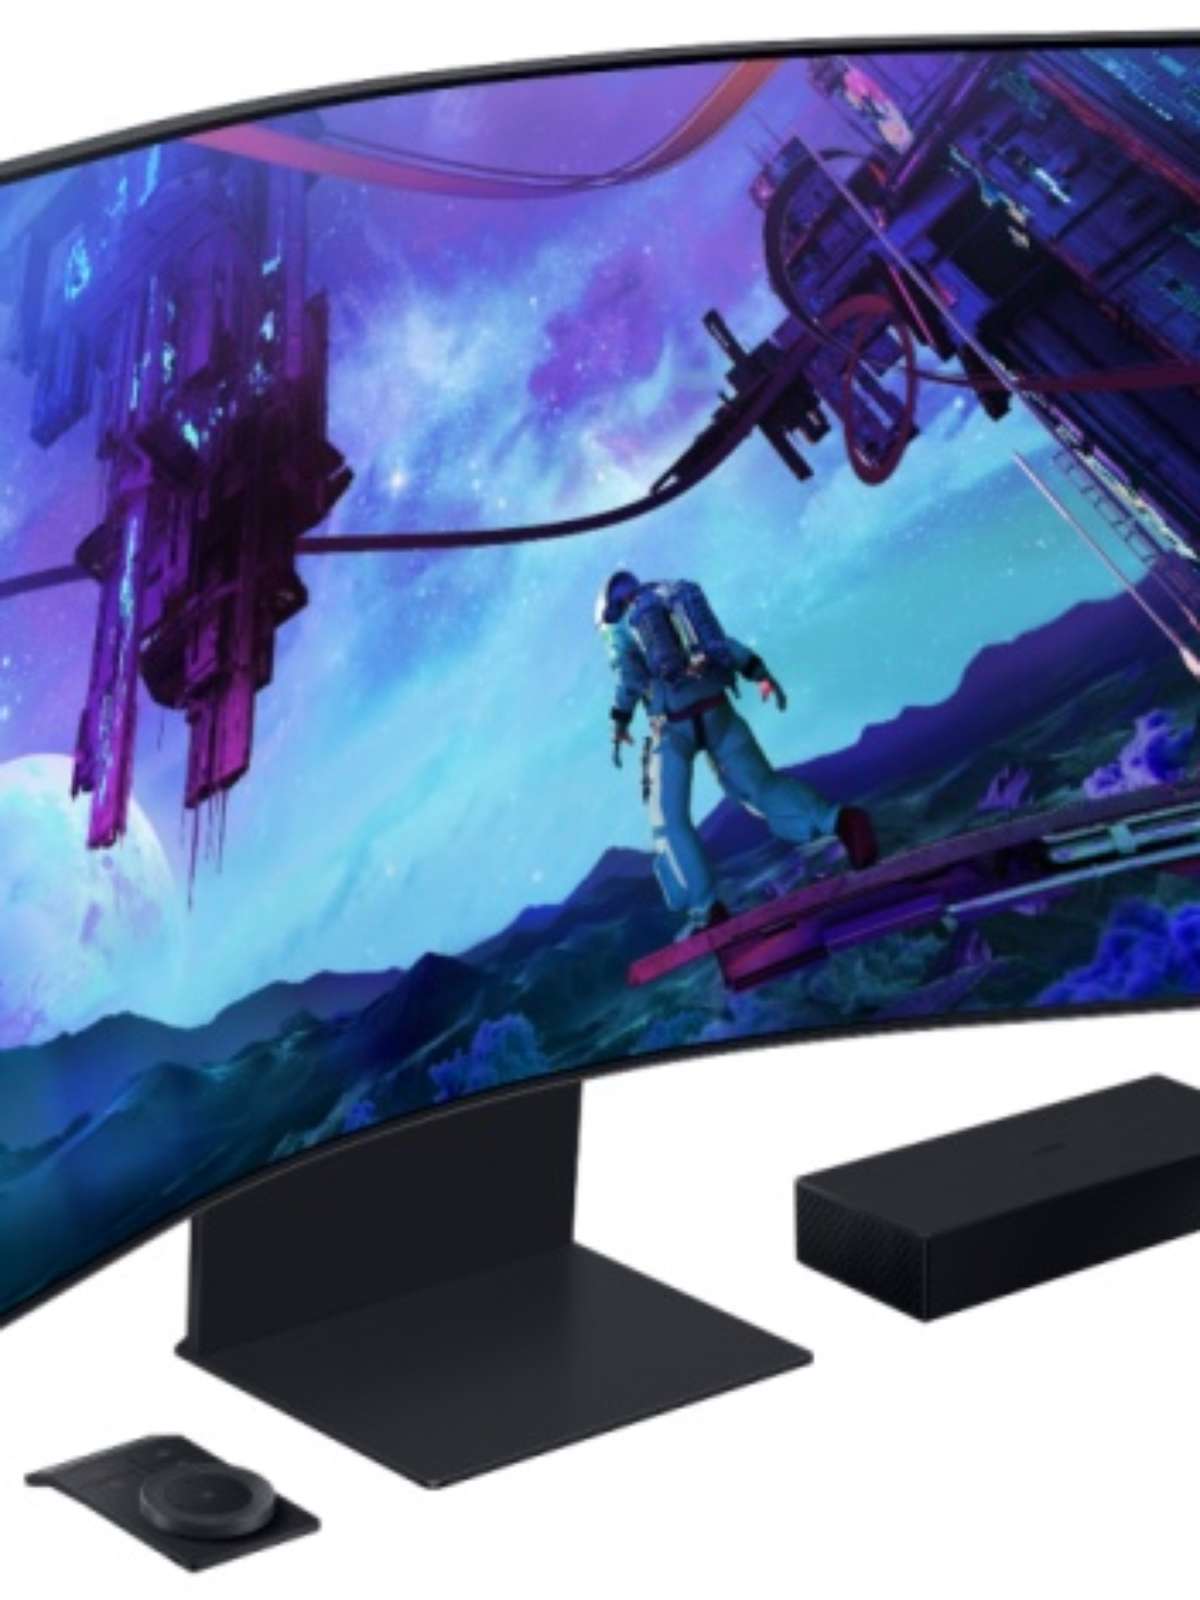 Xbox Game Pass e GeForce Now chegam a mais TVs 4K da Samsung; veja